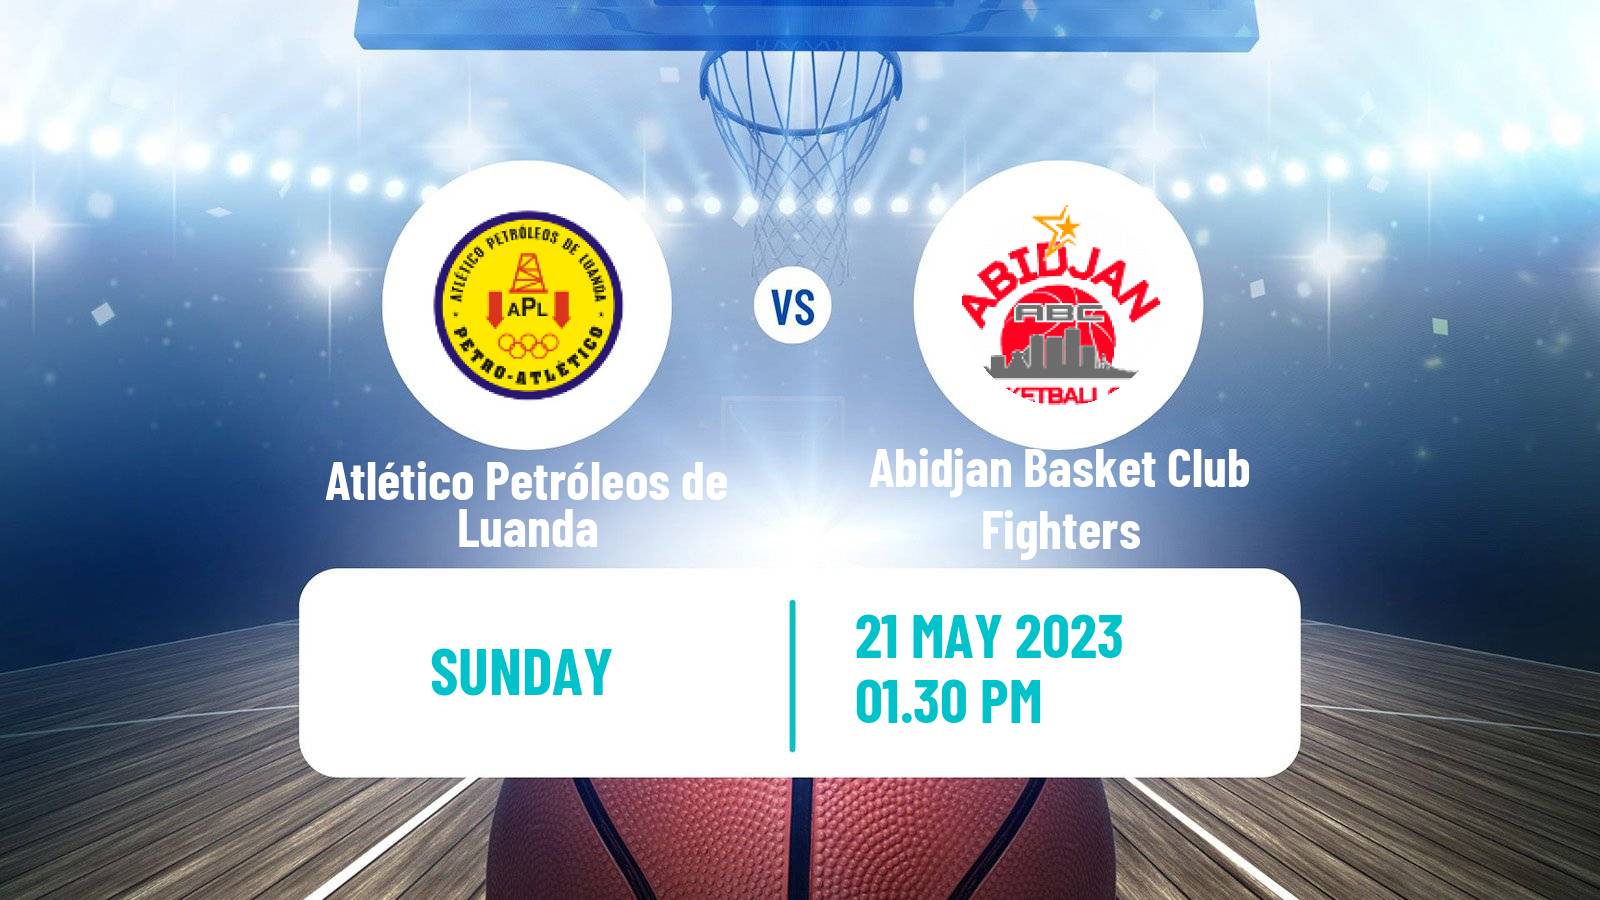 Basketball Basketball Africa League Atlético Petróleos de Luanda - Abidjan Basket Club Fighters